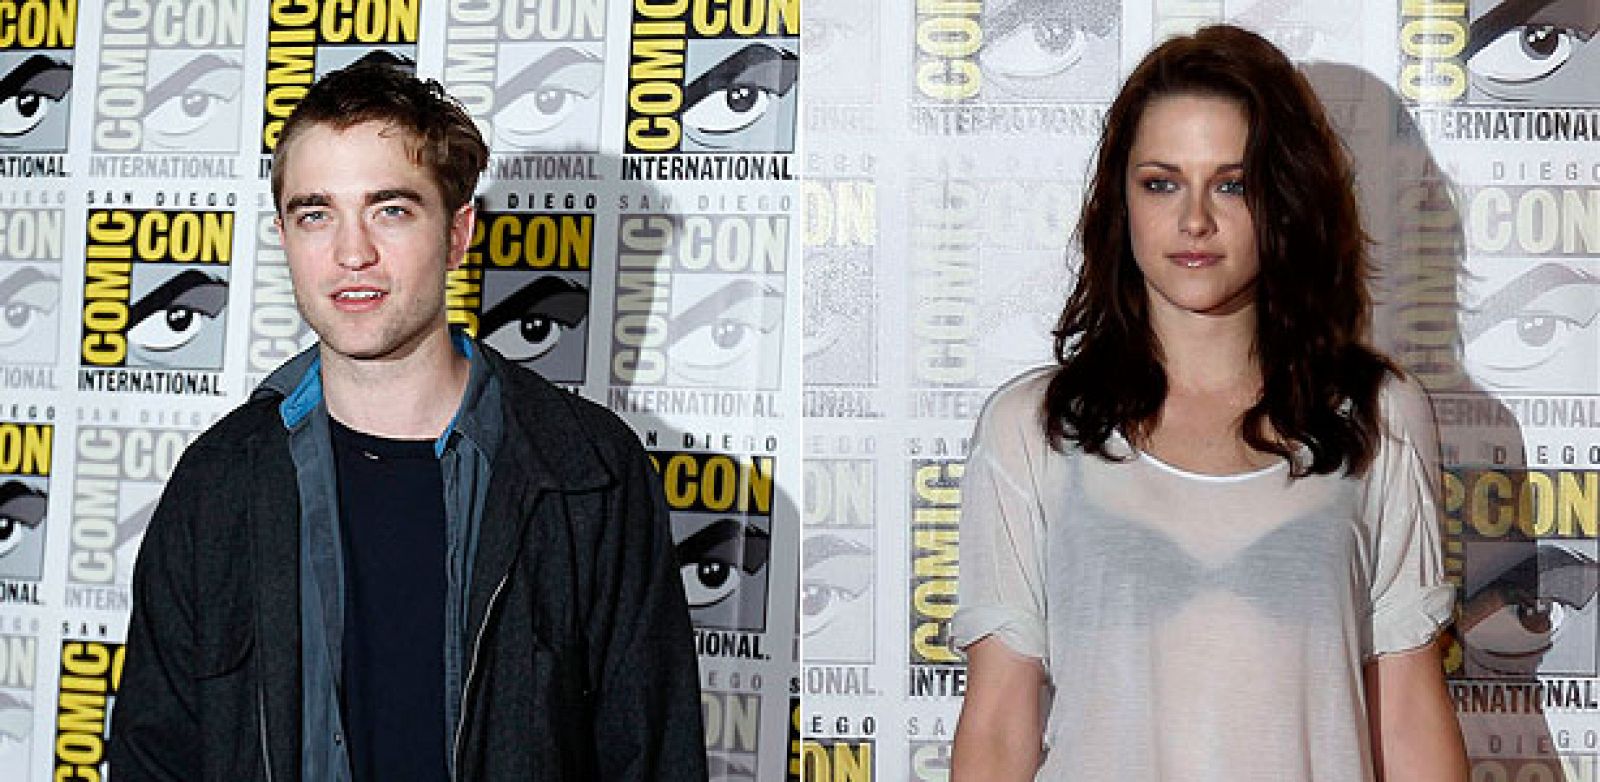 Los protagonistas de 'crepúsculo', Robert Pattinson y Kristen Stewart, en la Comic-Con de San Diego